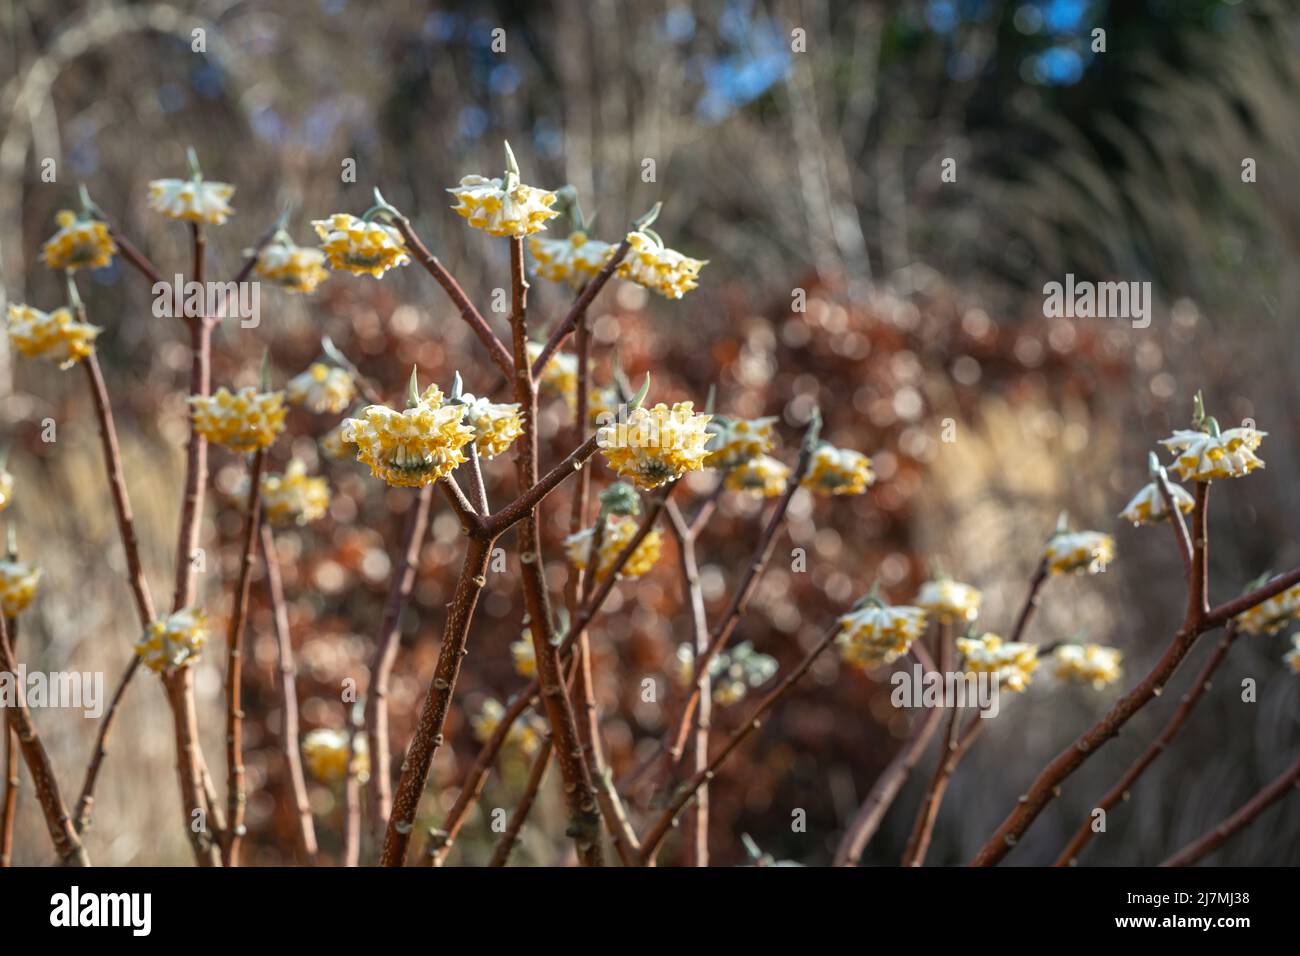 Edgeworthia chrysantha (brousse-papier) en fleur, arbuste à fleurs à la fin de l'hiver Banque D'Images